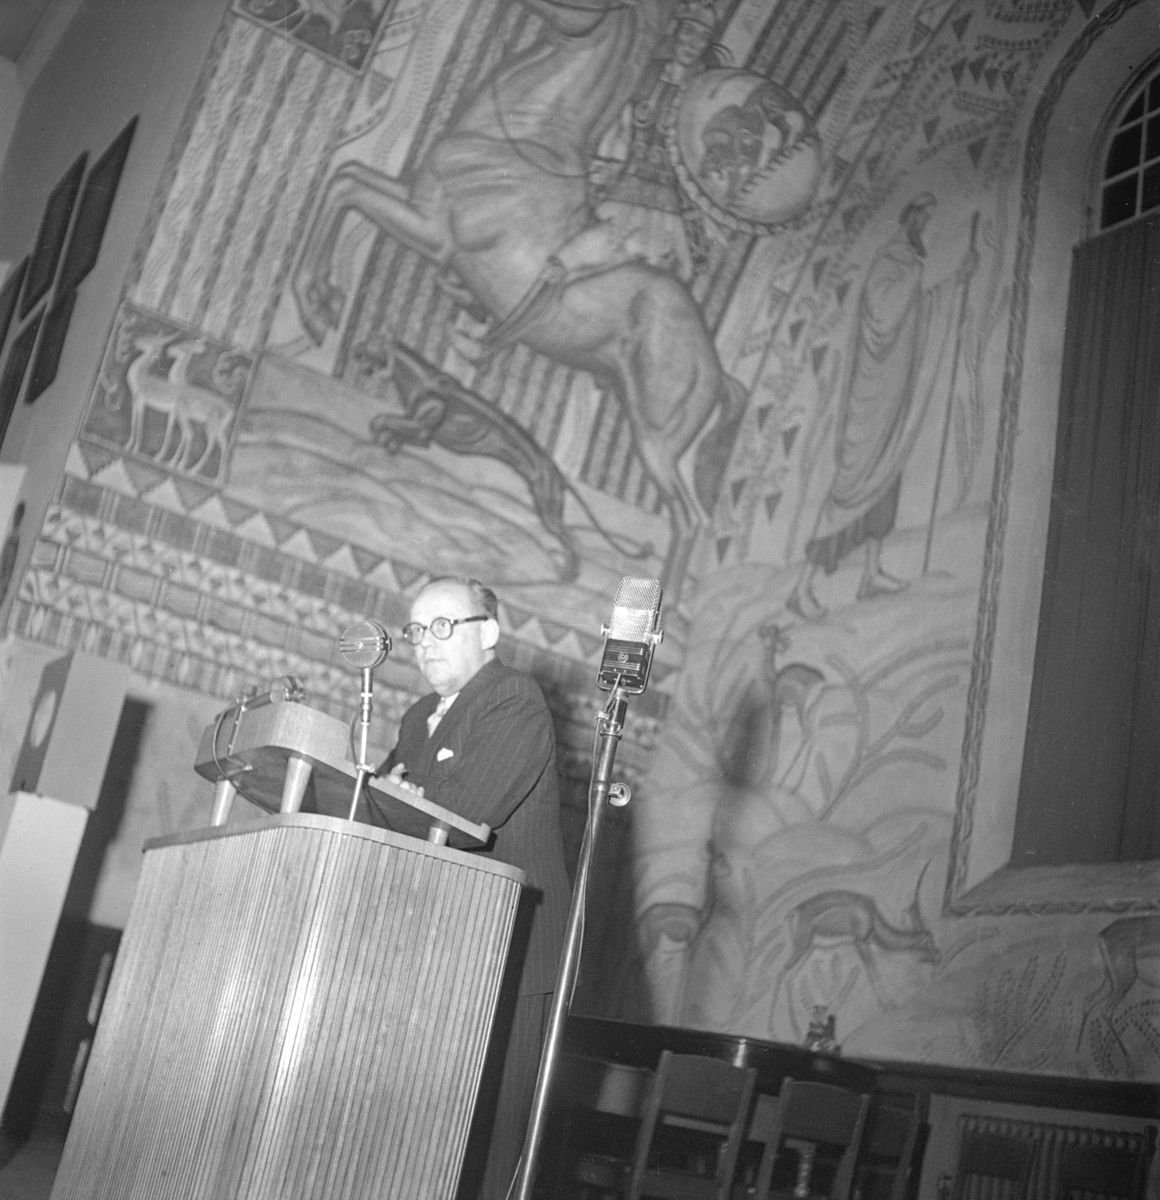 Musikvetaren och radiomannen Per Lindfors leder musikgissningstävling mellan städerna Linköping och Motala. Platsen är läroverkets aula. Tiden den 7 mars 1947.